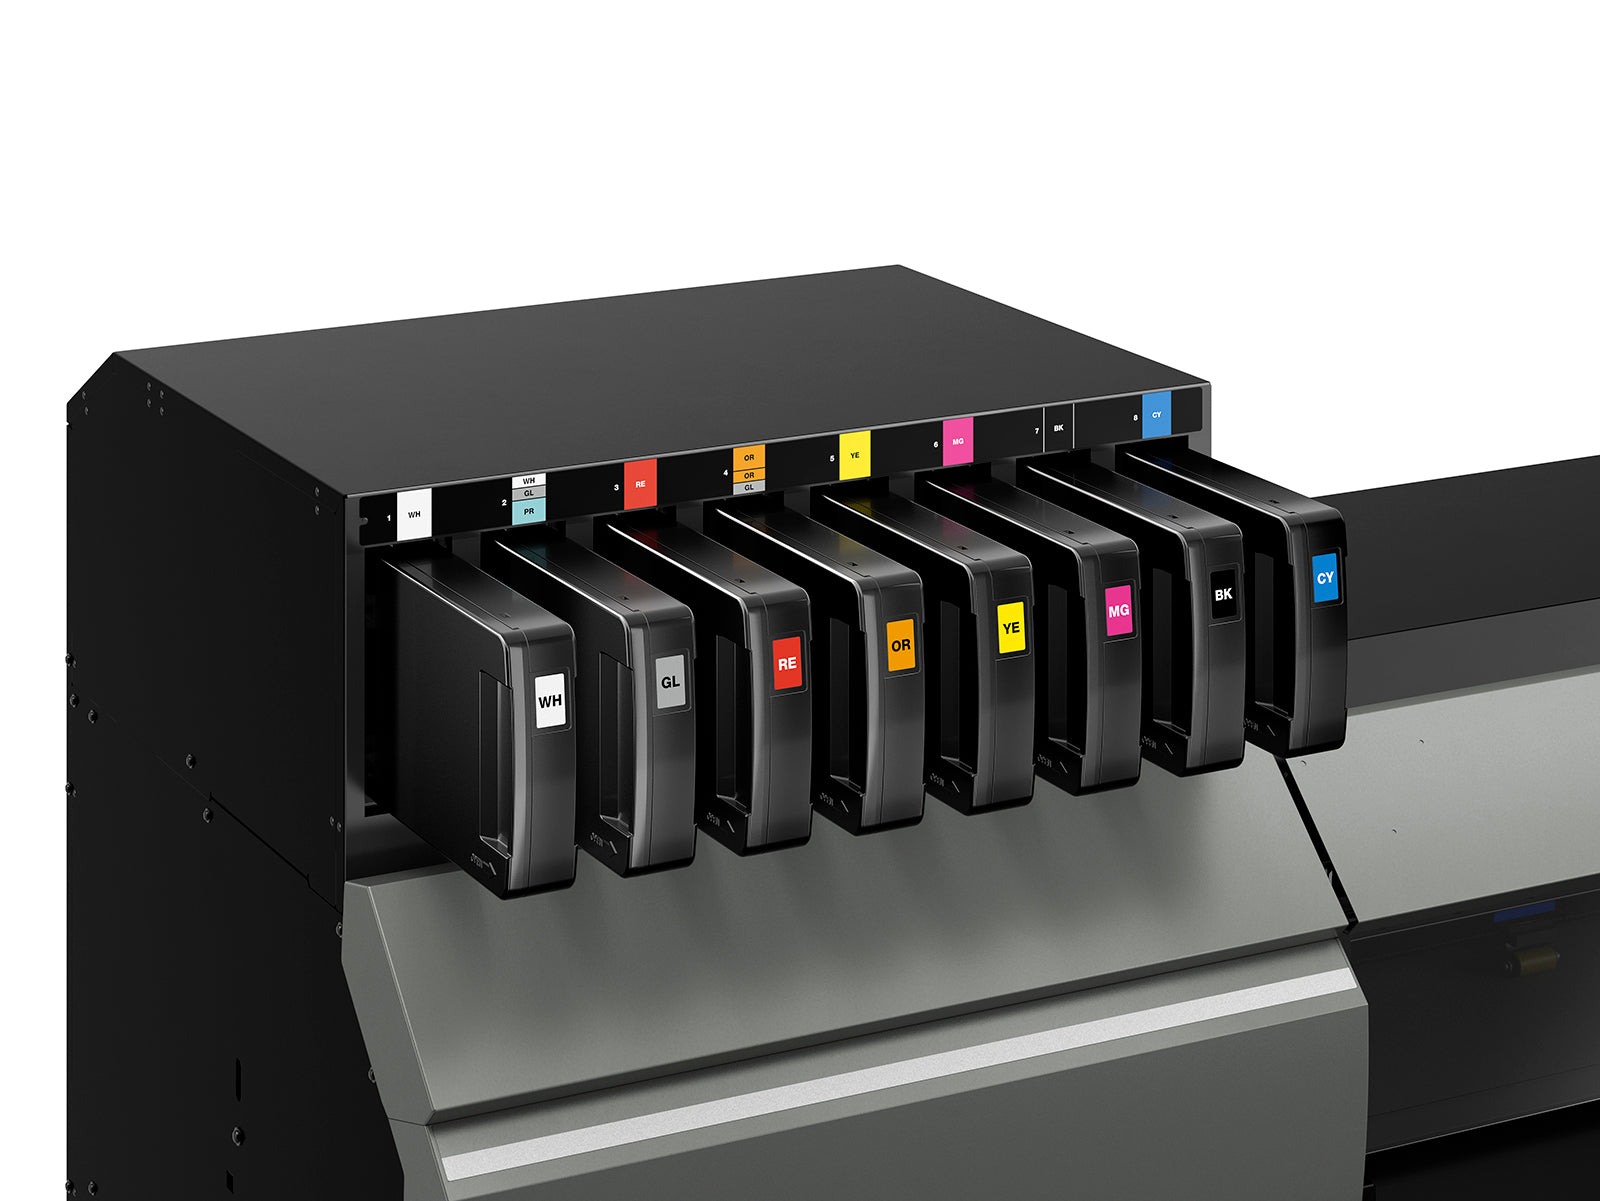 Roland TrueVIS LG-540 UV Printer/Cutter